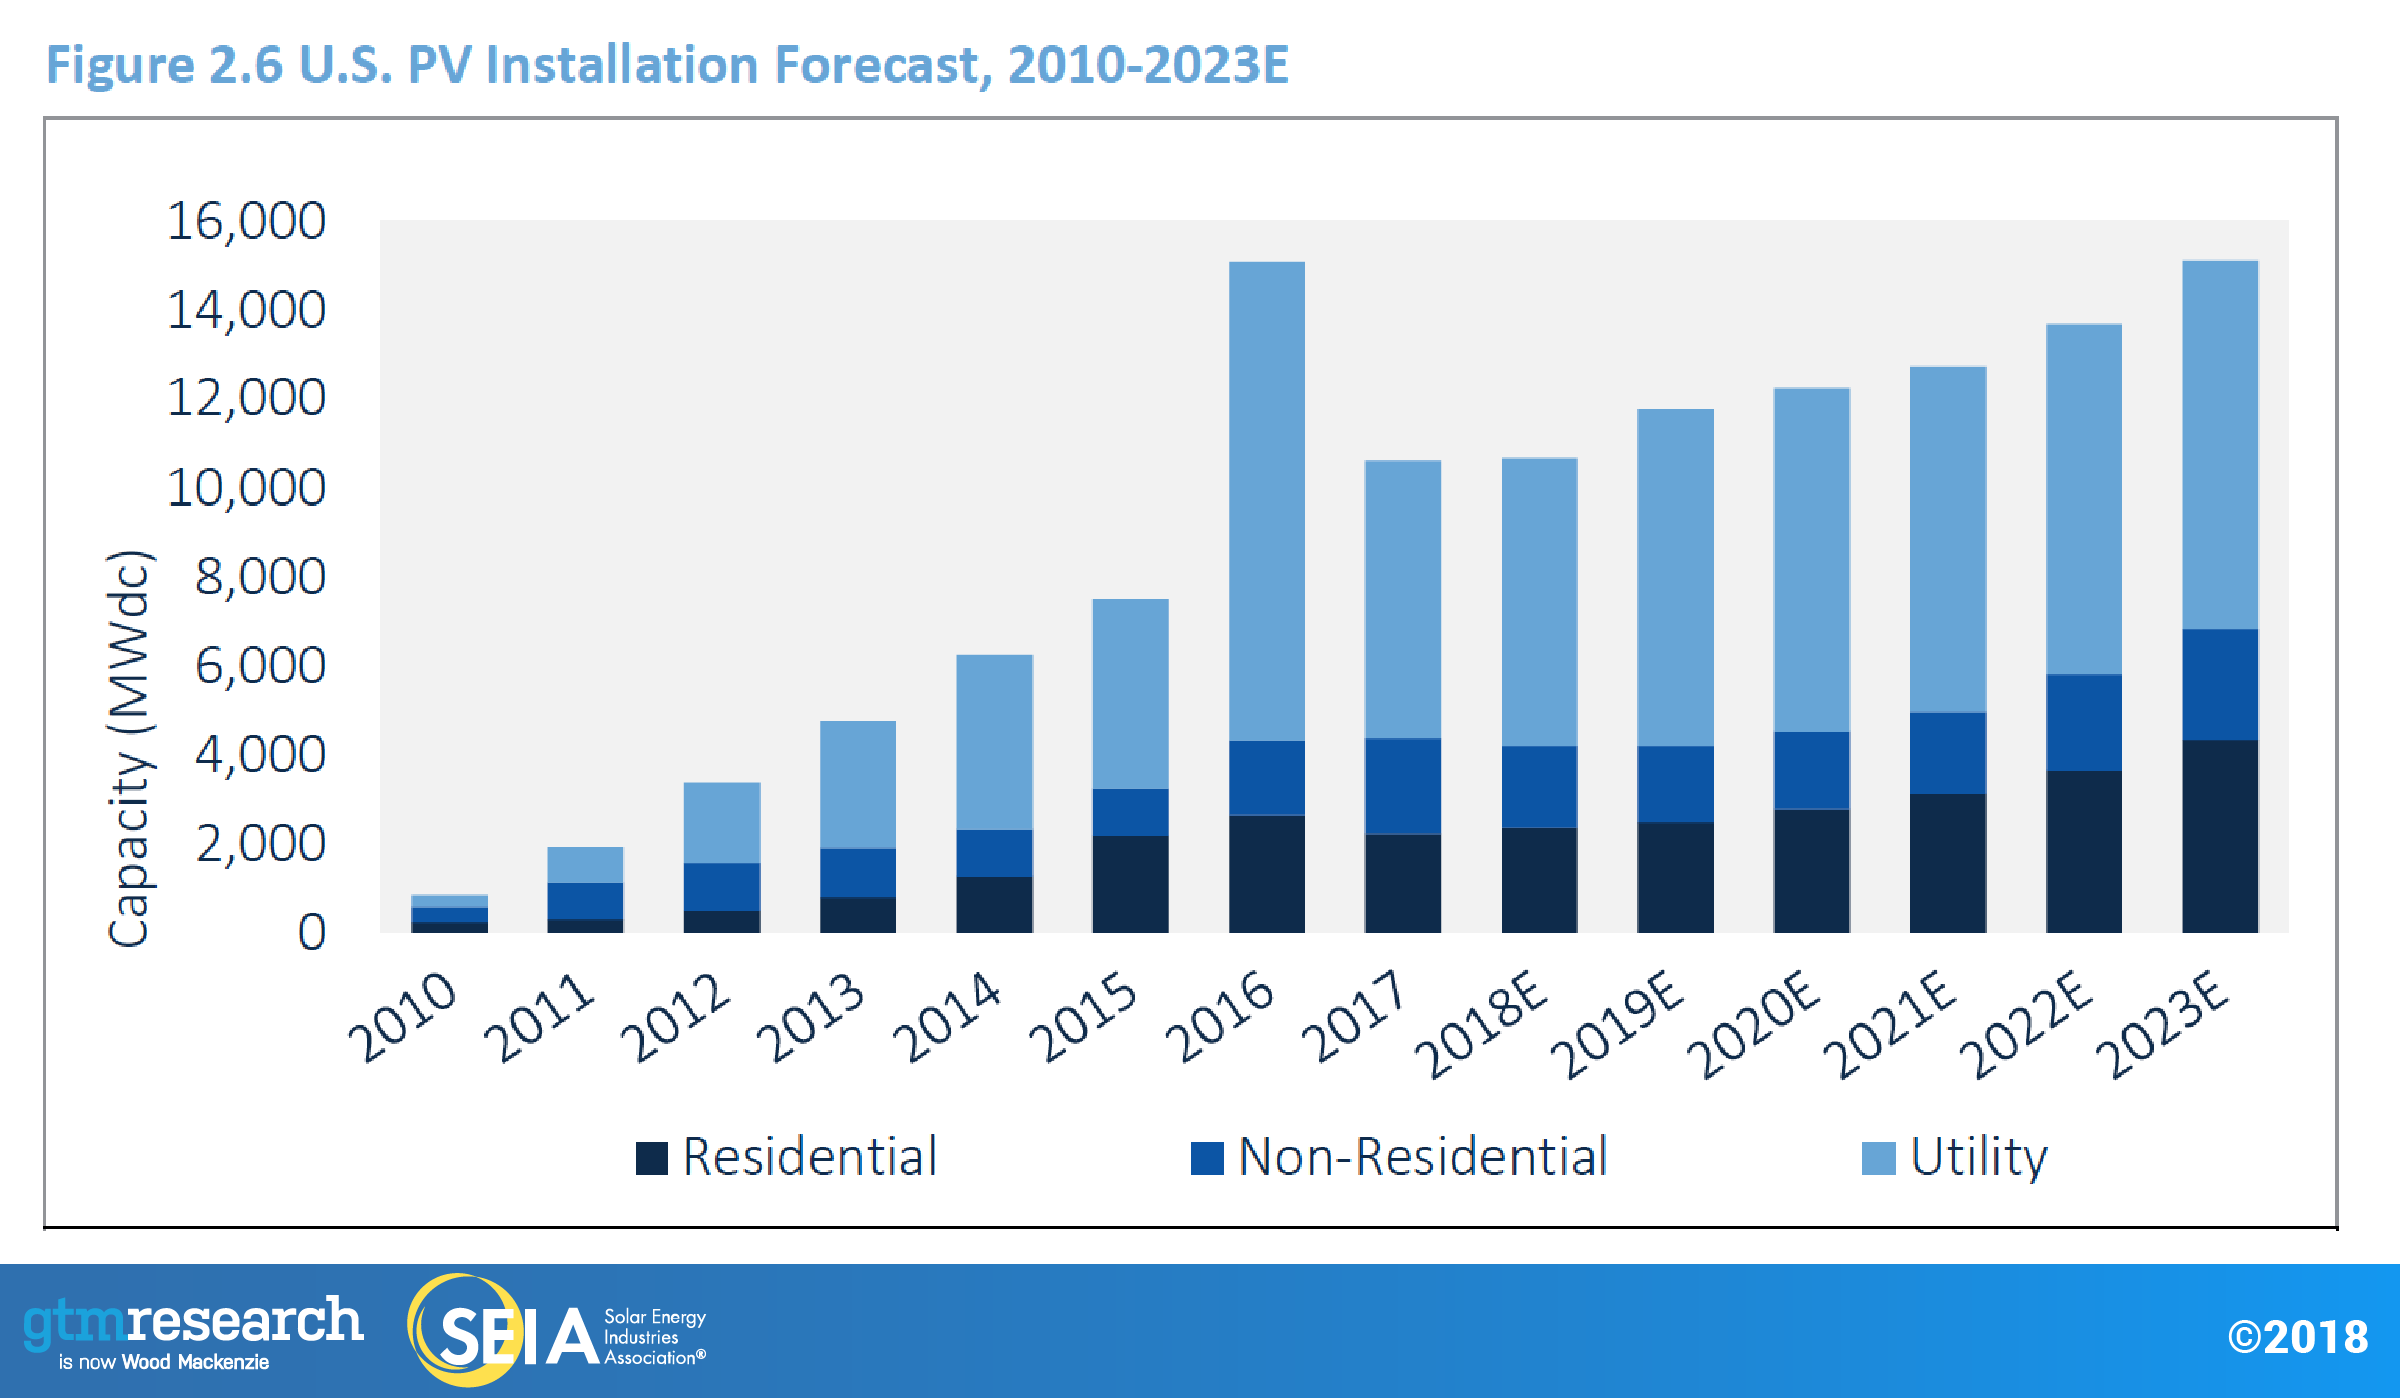 U.S. PV Installation Forecast, 2010-2020E